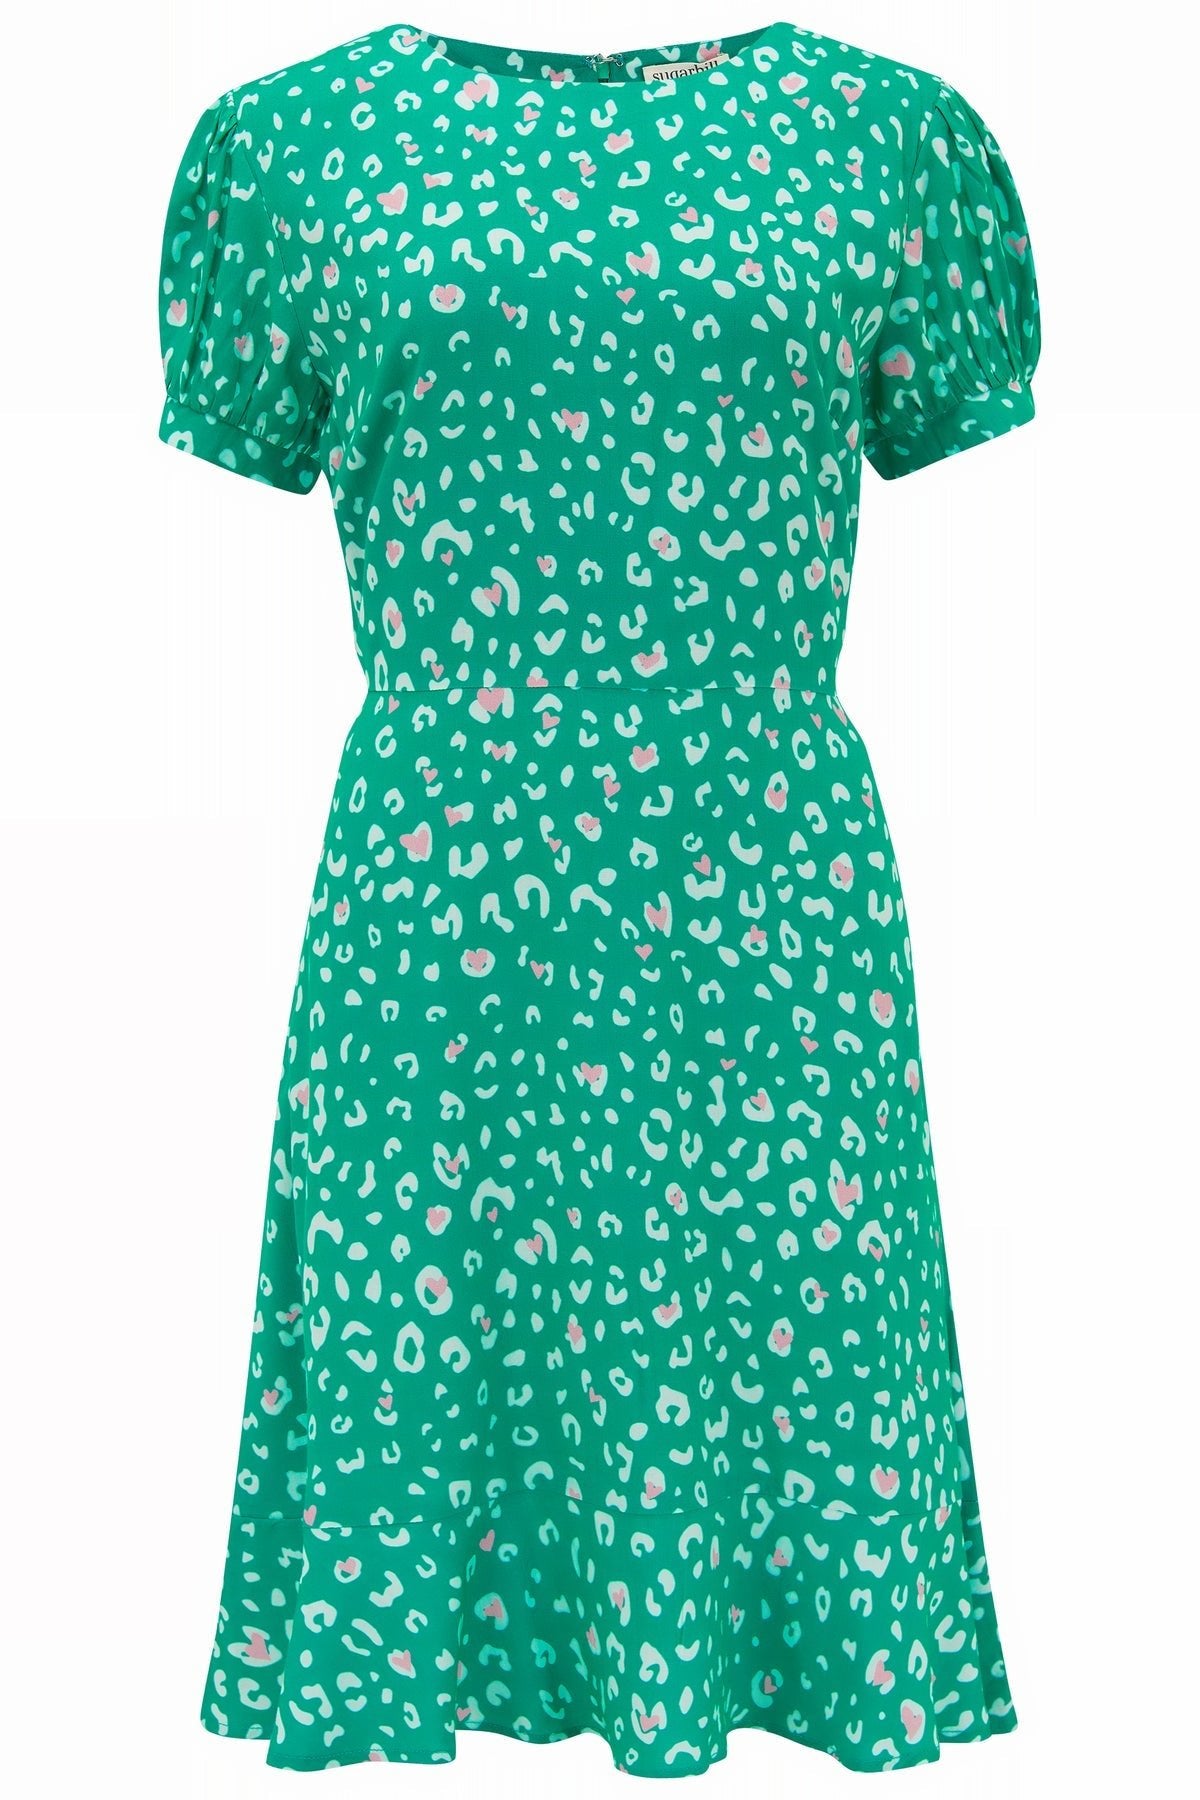 Amoret Dress - Green Leopard Hearts - Rockamilly-Dresses-Vintage